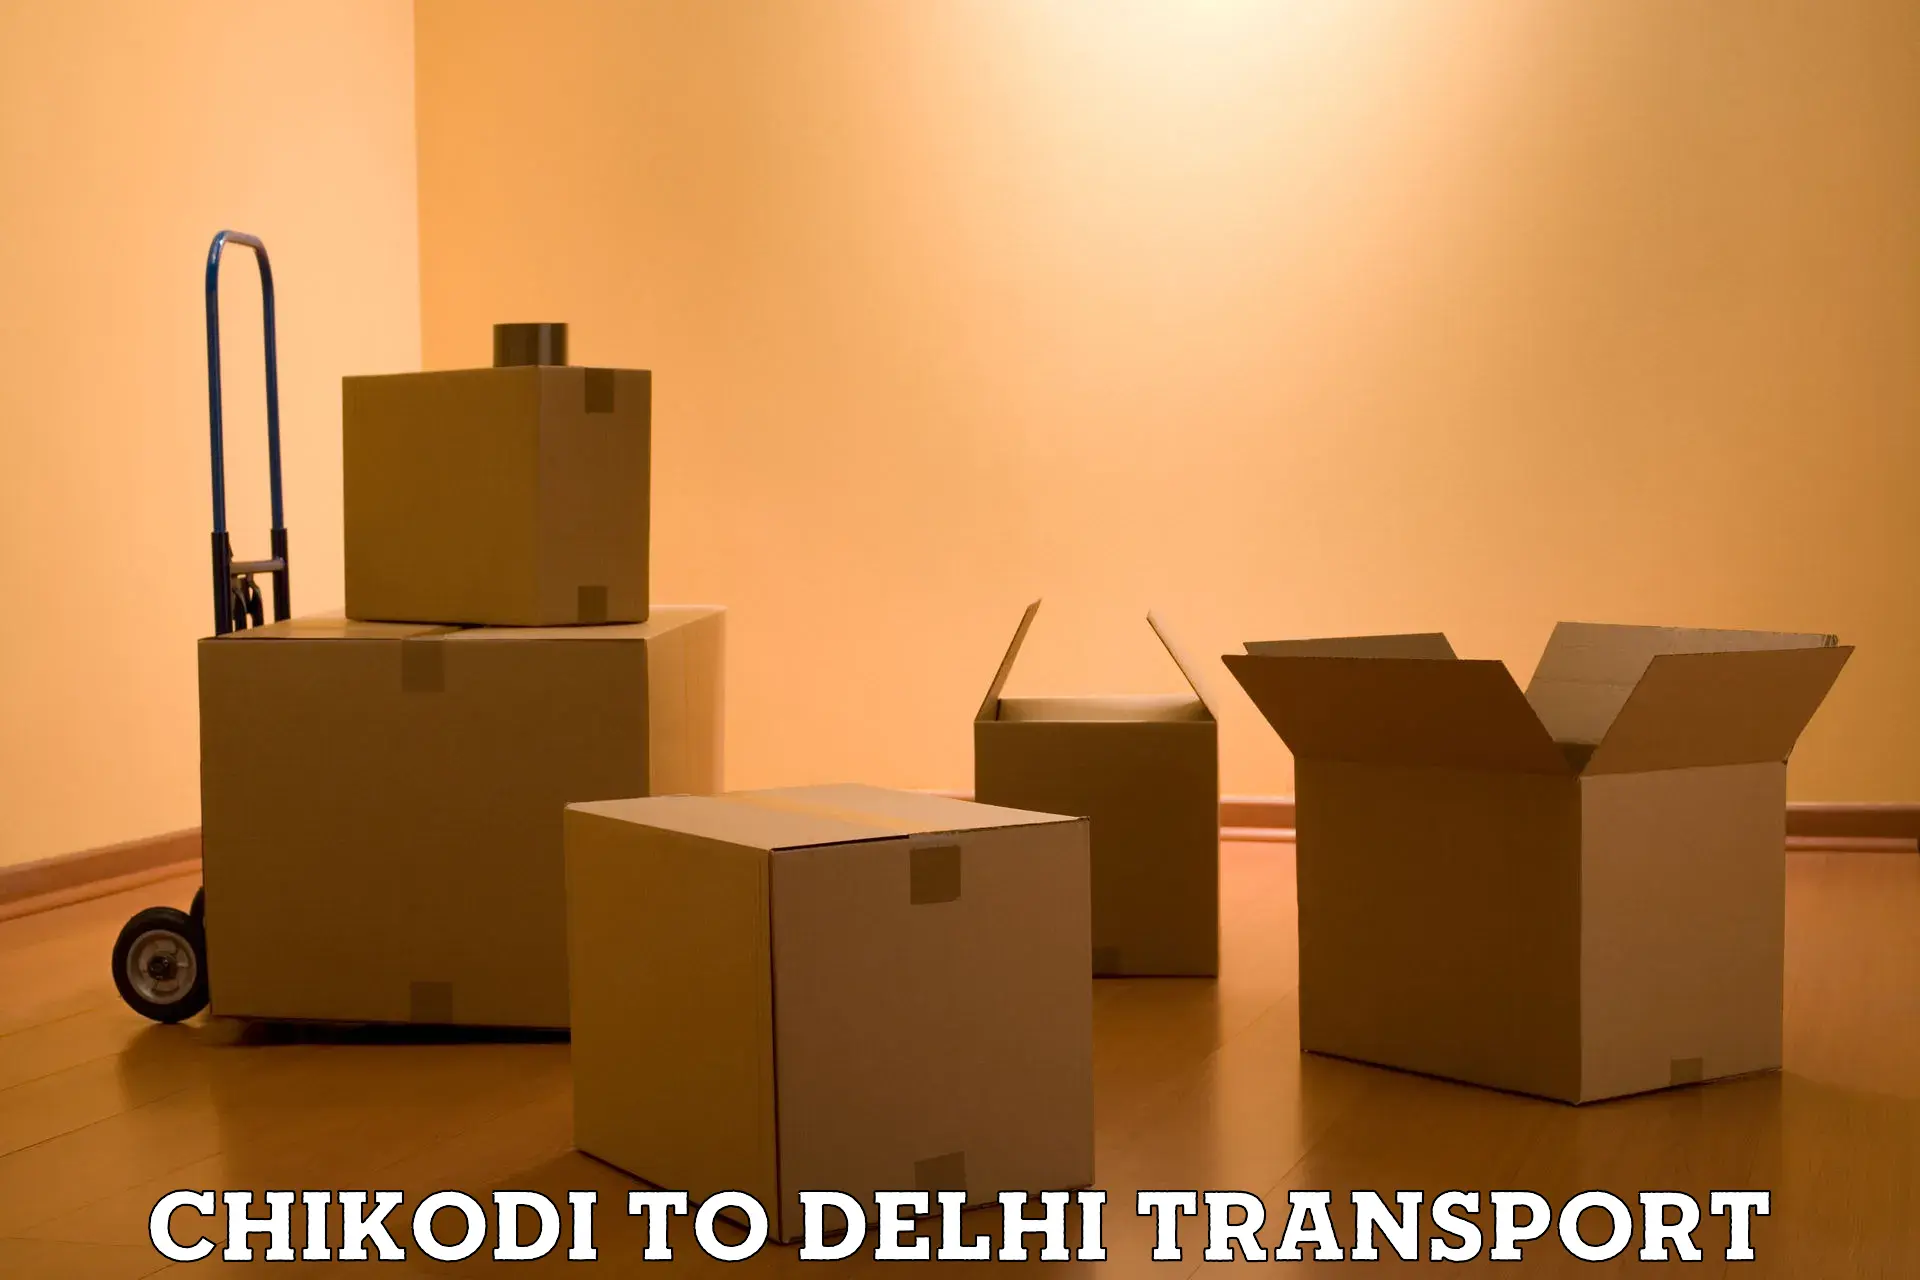 Furniture transport service Chikodi to Ashok Vihar